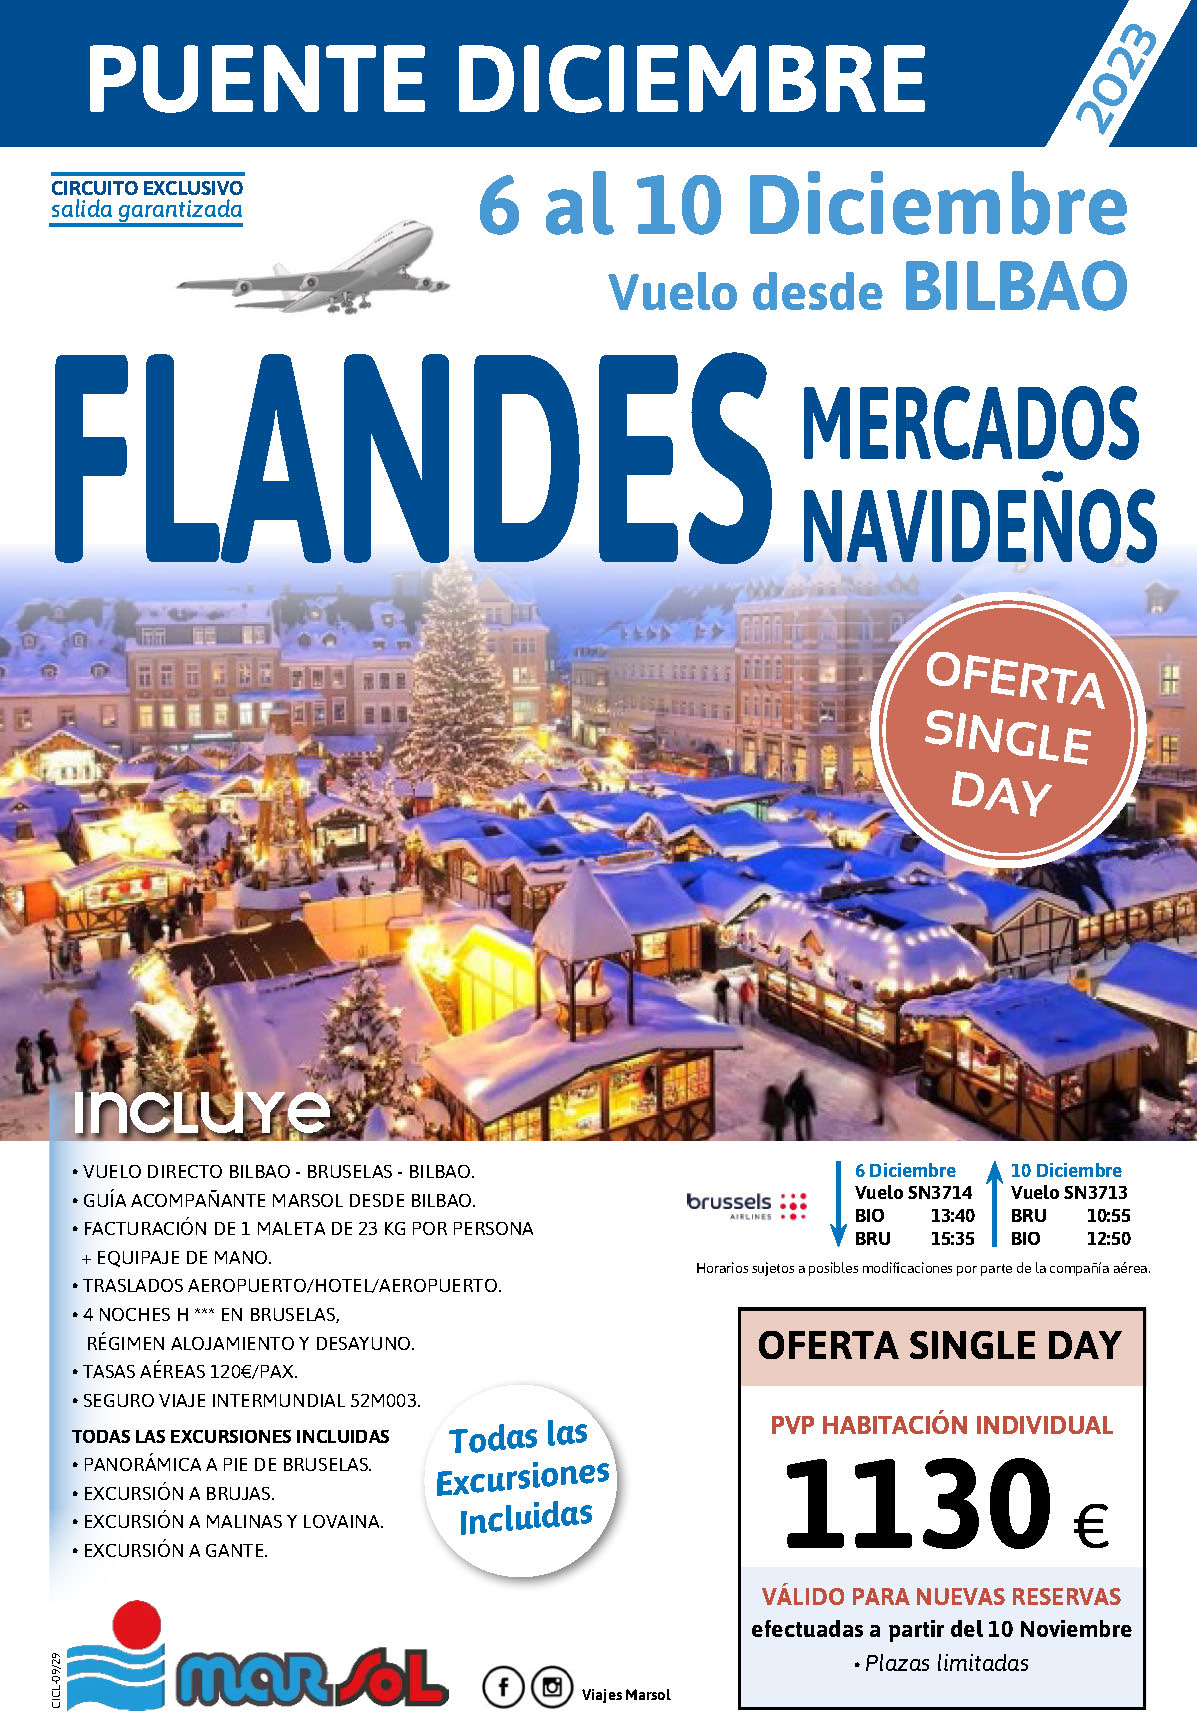 Oferta Marsol Puente de Diciembre 2023 Singles Day Mercados de Navidad en Flandes 5 dias salida 6 diciembre vuelo directo desde Bilbao